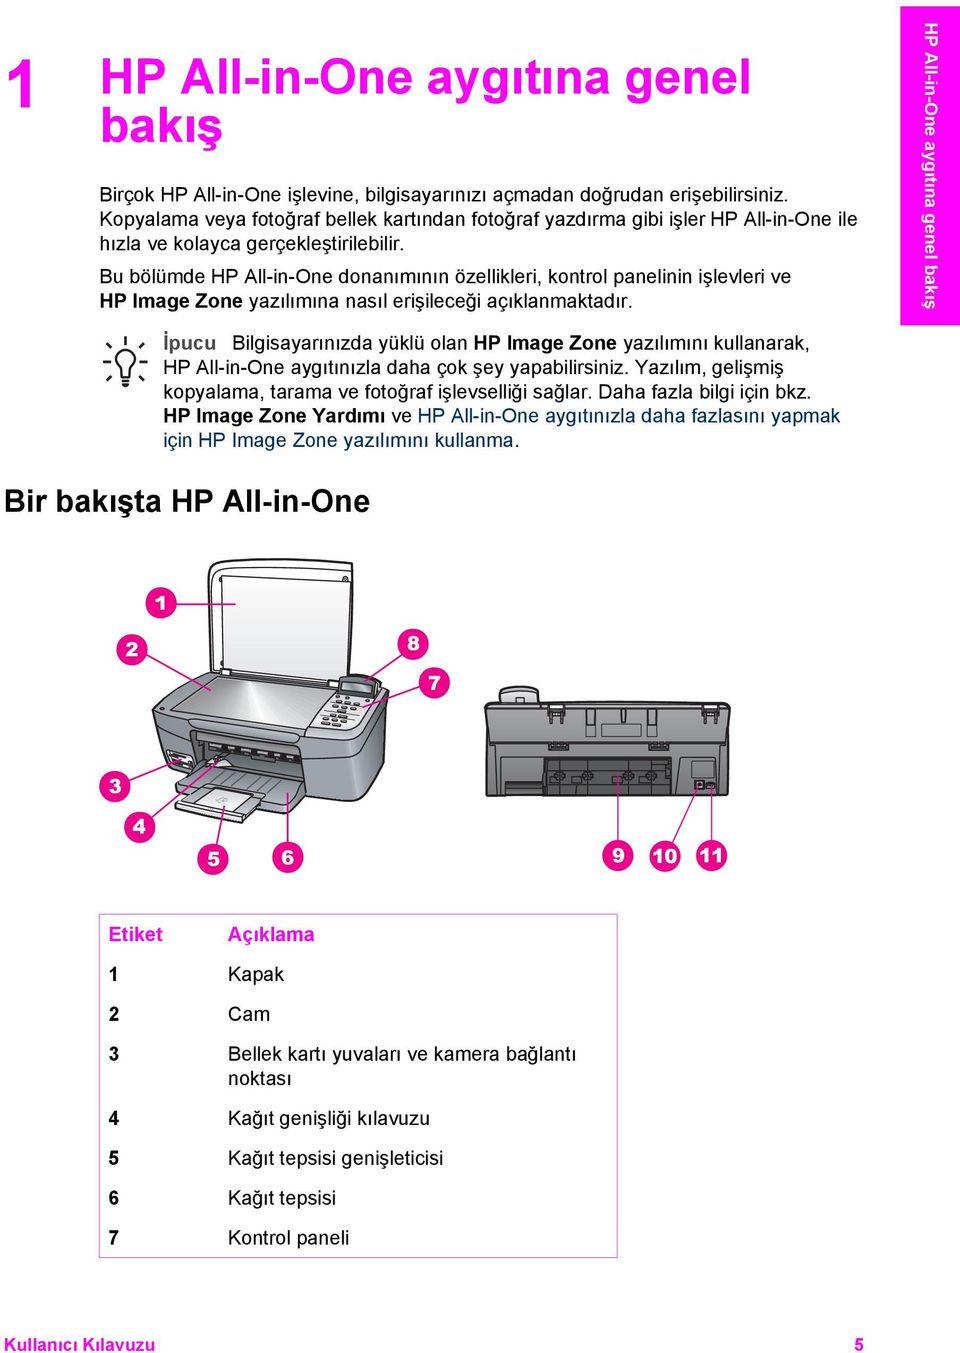 Bu bölümde HP All-in-One donanımının özellikleri, kontrol panelinin işlevleri ve HP Image Zone yazılımına nasıl erişileceği açıklanmaktadır.